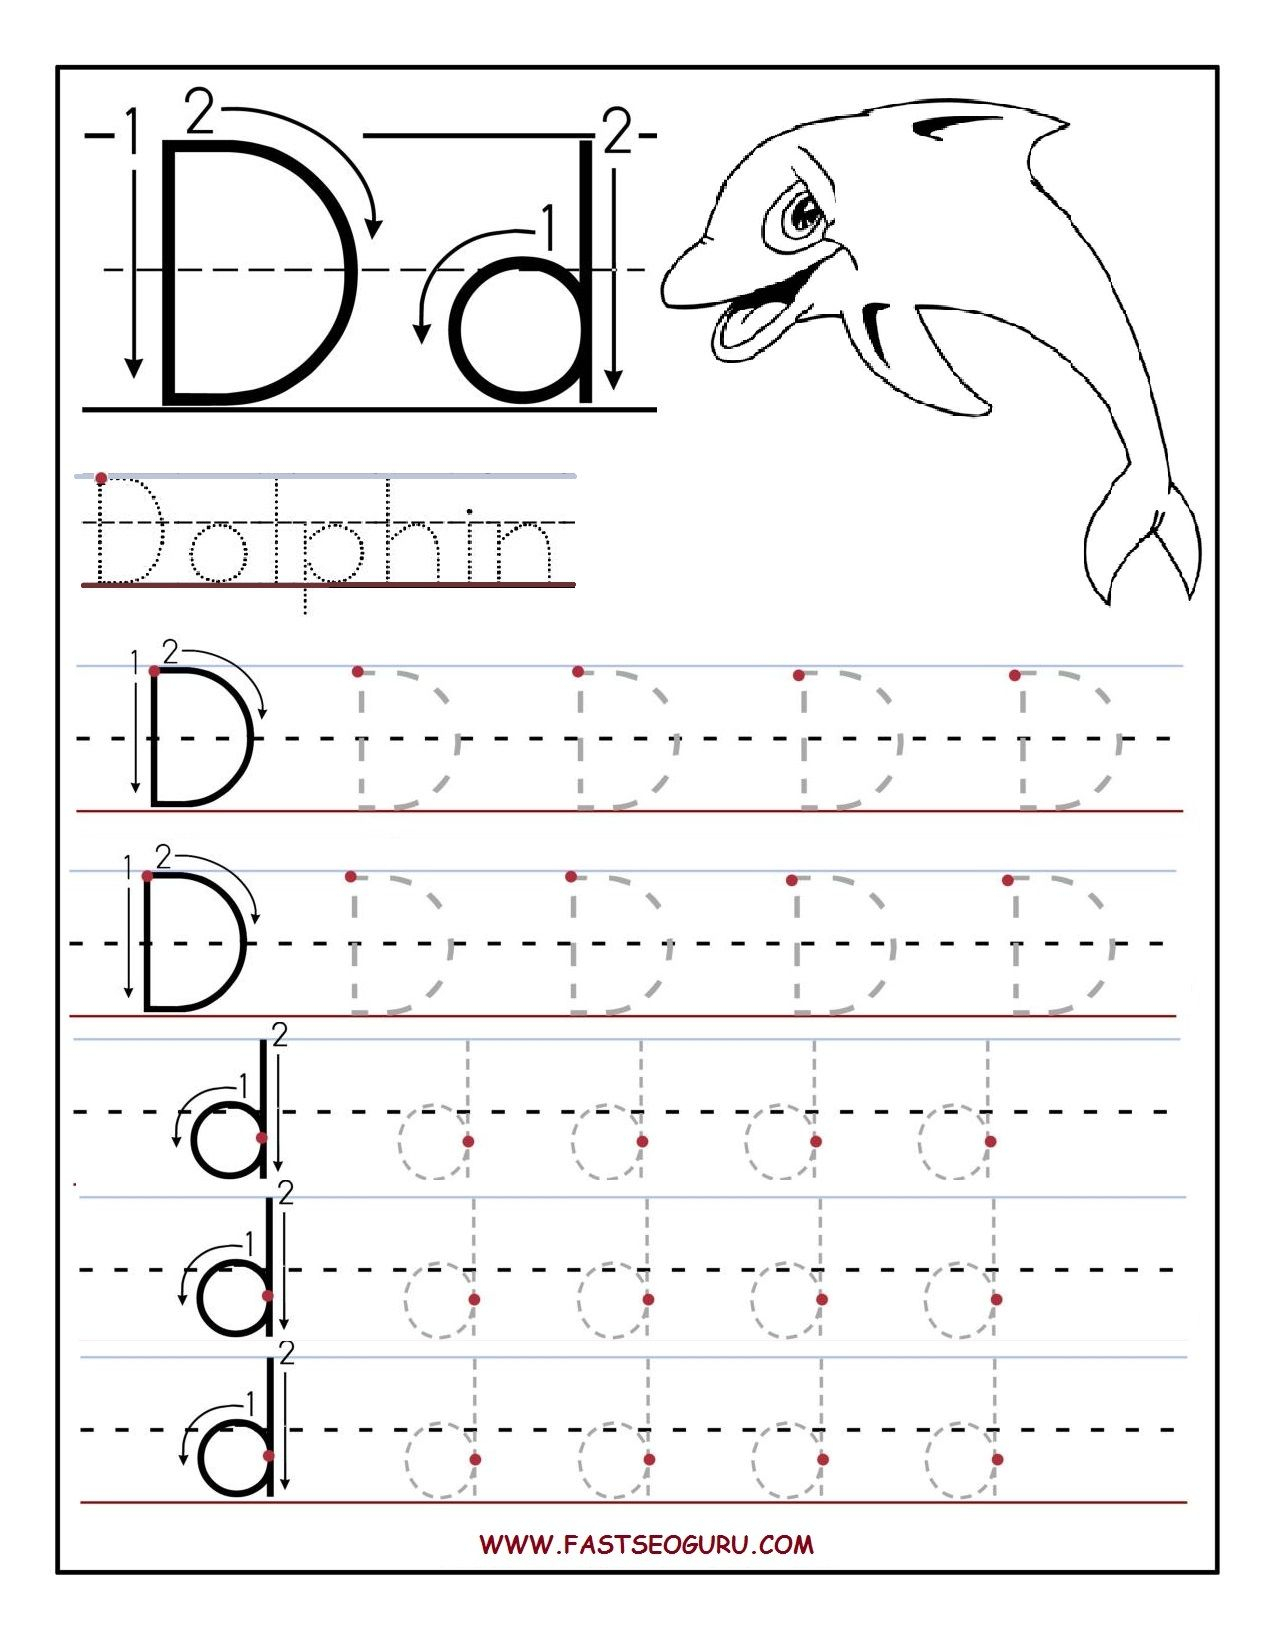 Letter D Worksheets To You. Letter D Worksheets - Alphabet pertaining to Letter D Worksheets For 2 Year Olds